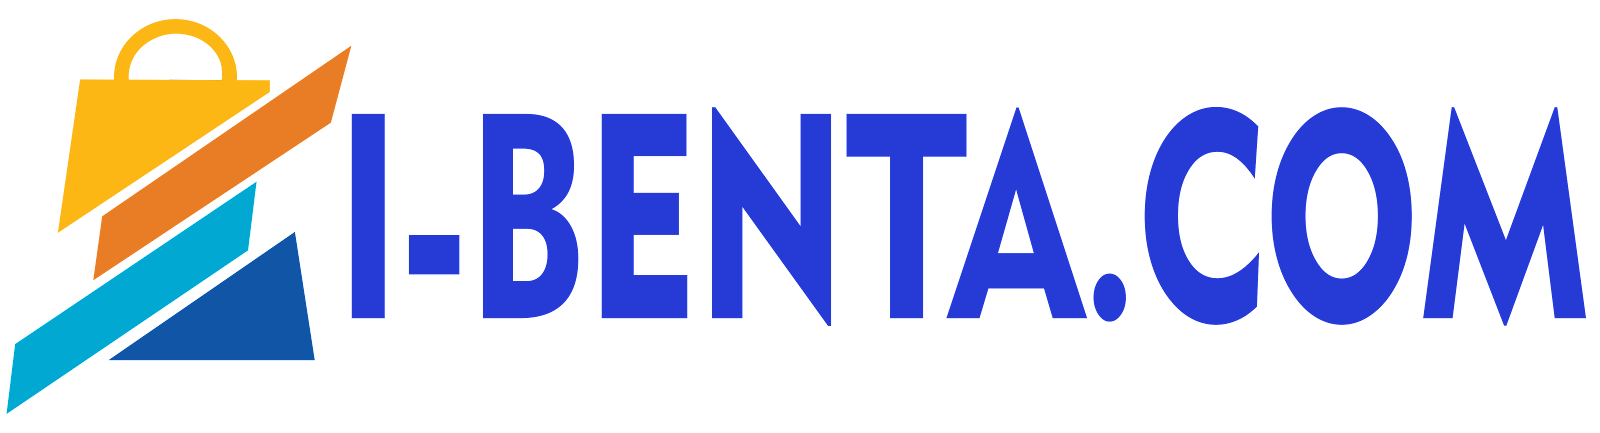 I-BENTA.COM